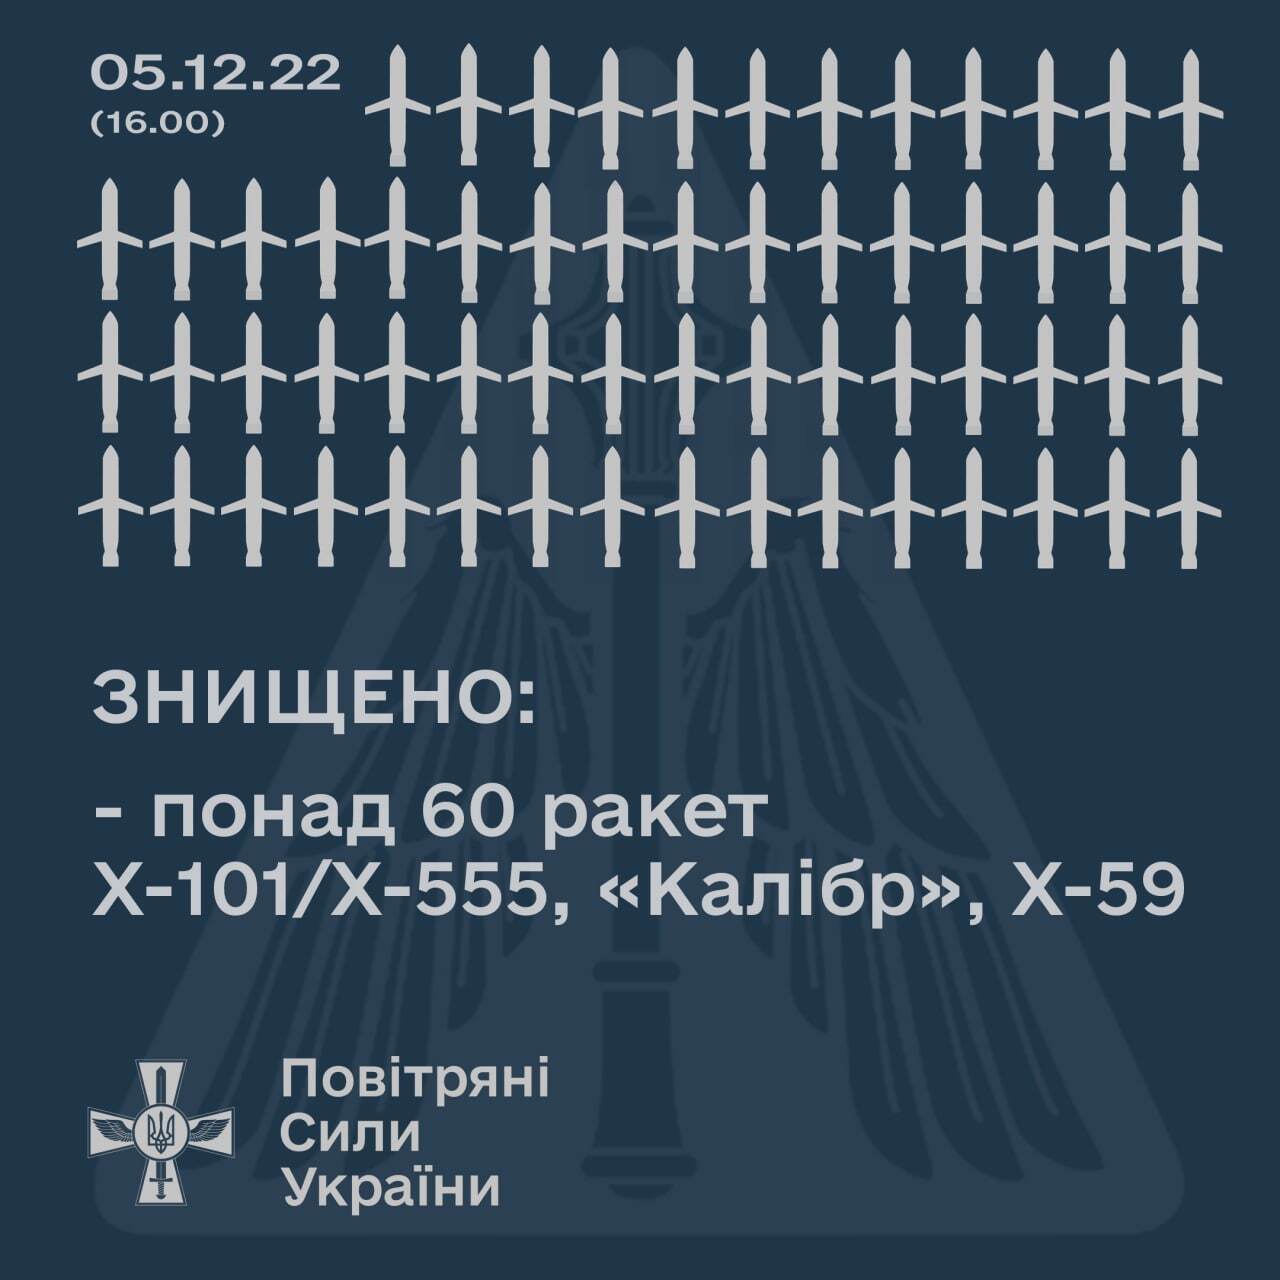 Кількість ракет, збитих під час атаки 5 грудня